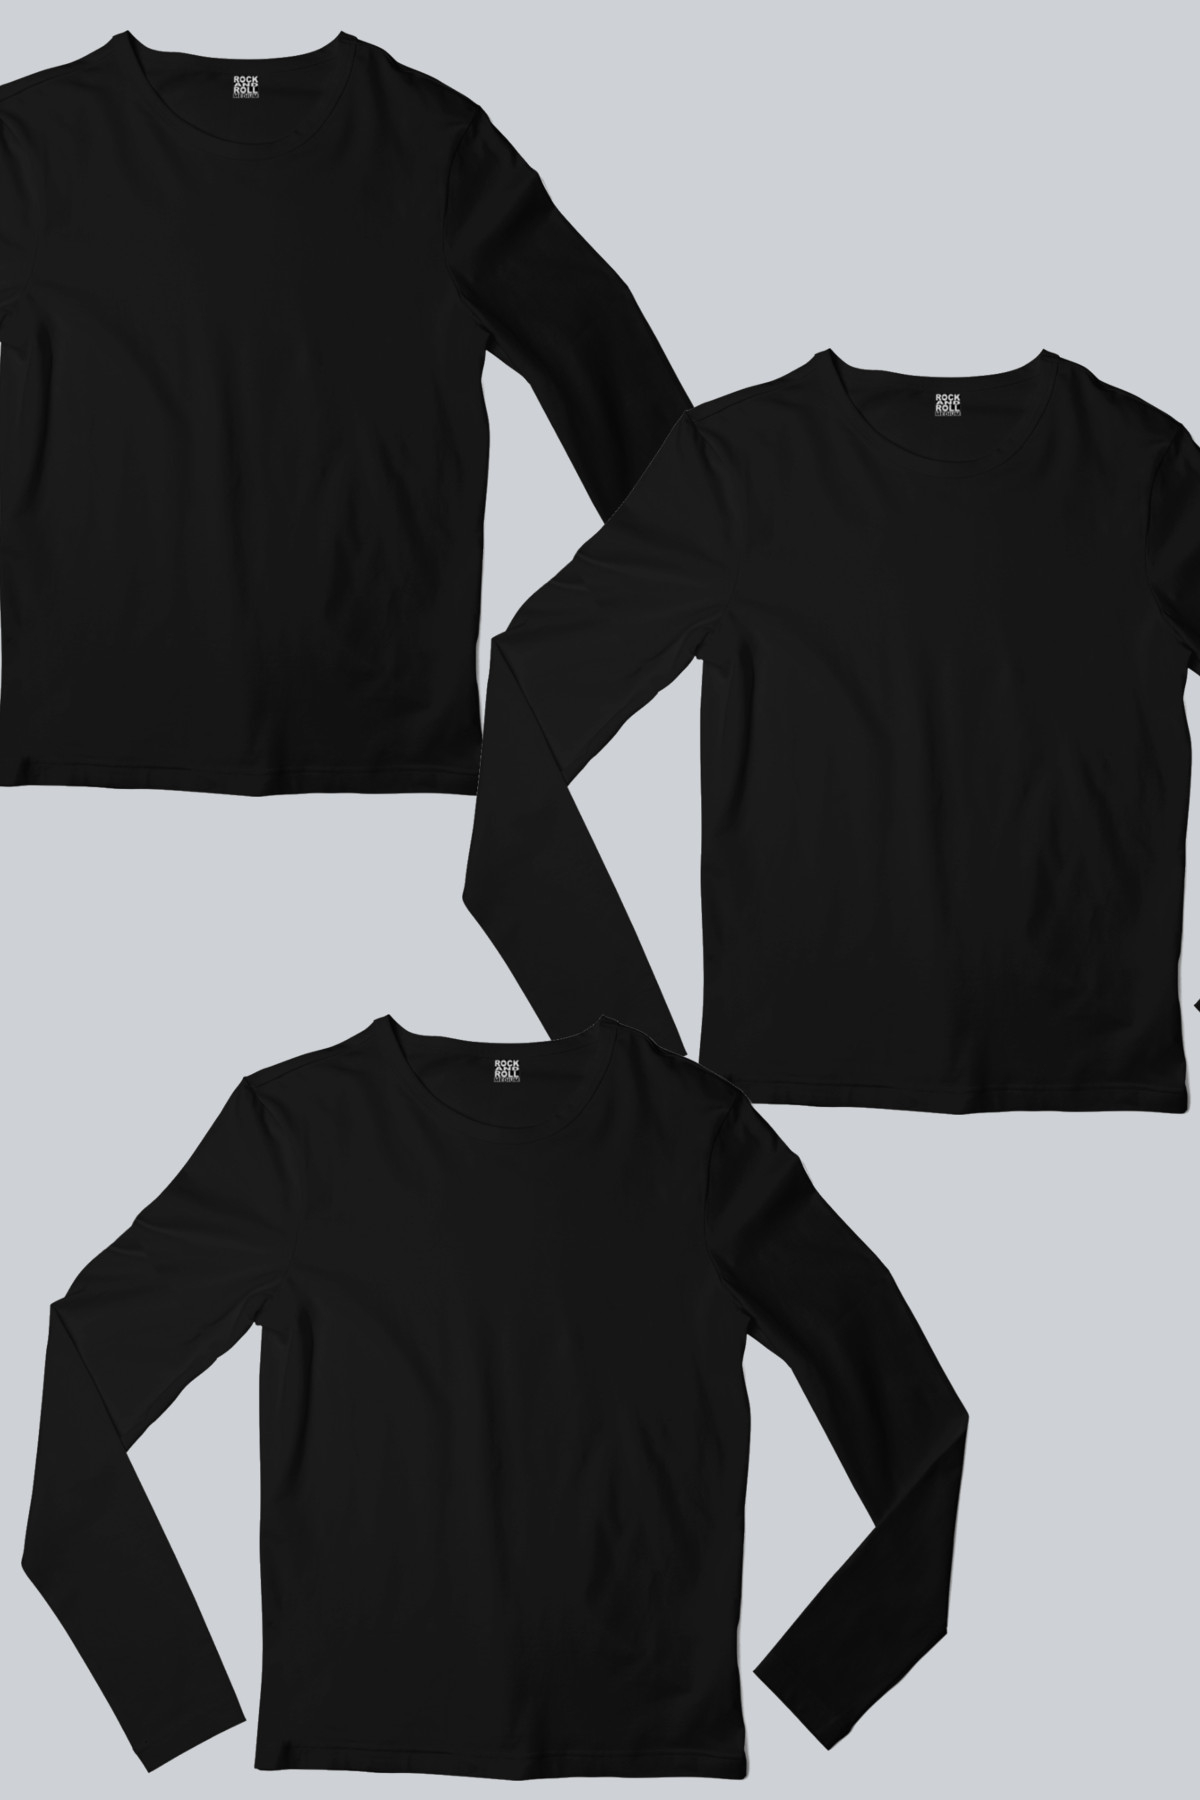 Düz, Baskısız Siyah Uzun Kollu Erkek Tişört 3'lü Eko Paket